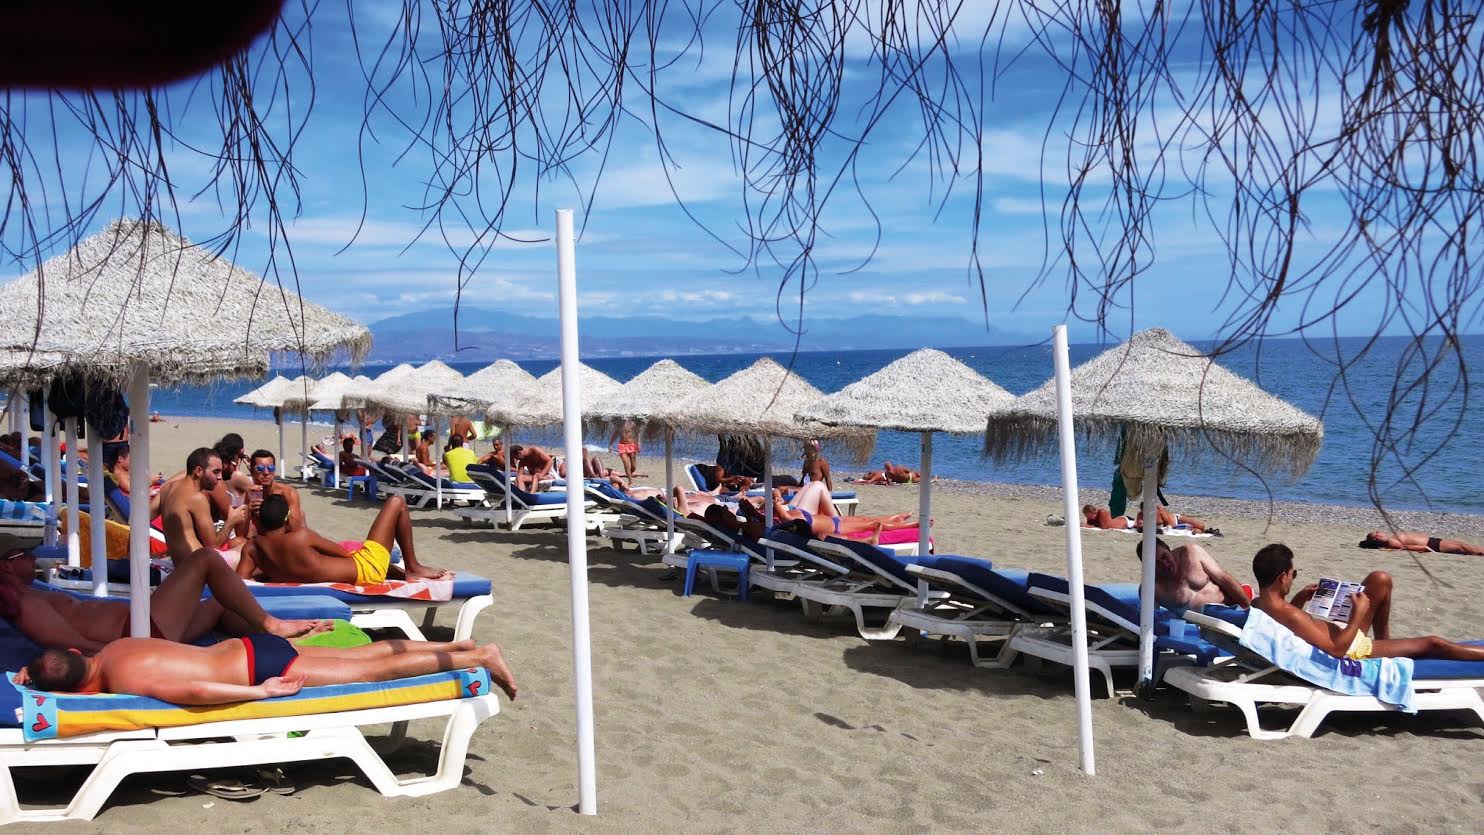 10 playas gayfriendly de Andalucía